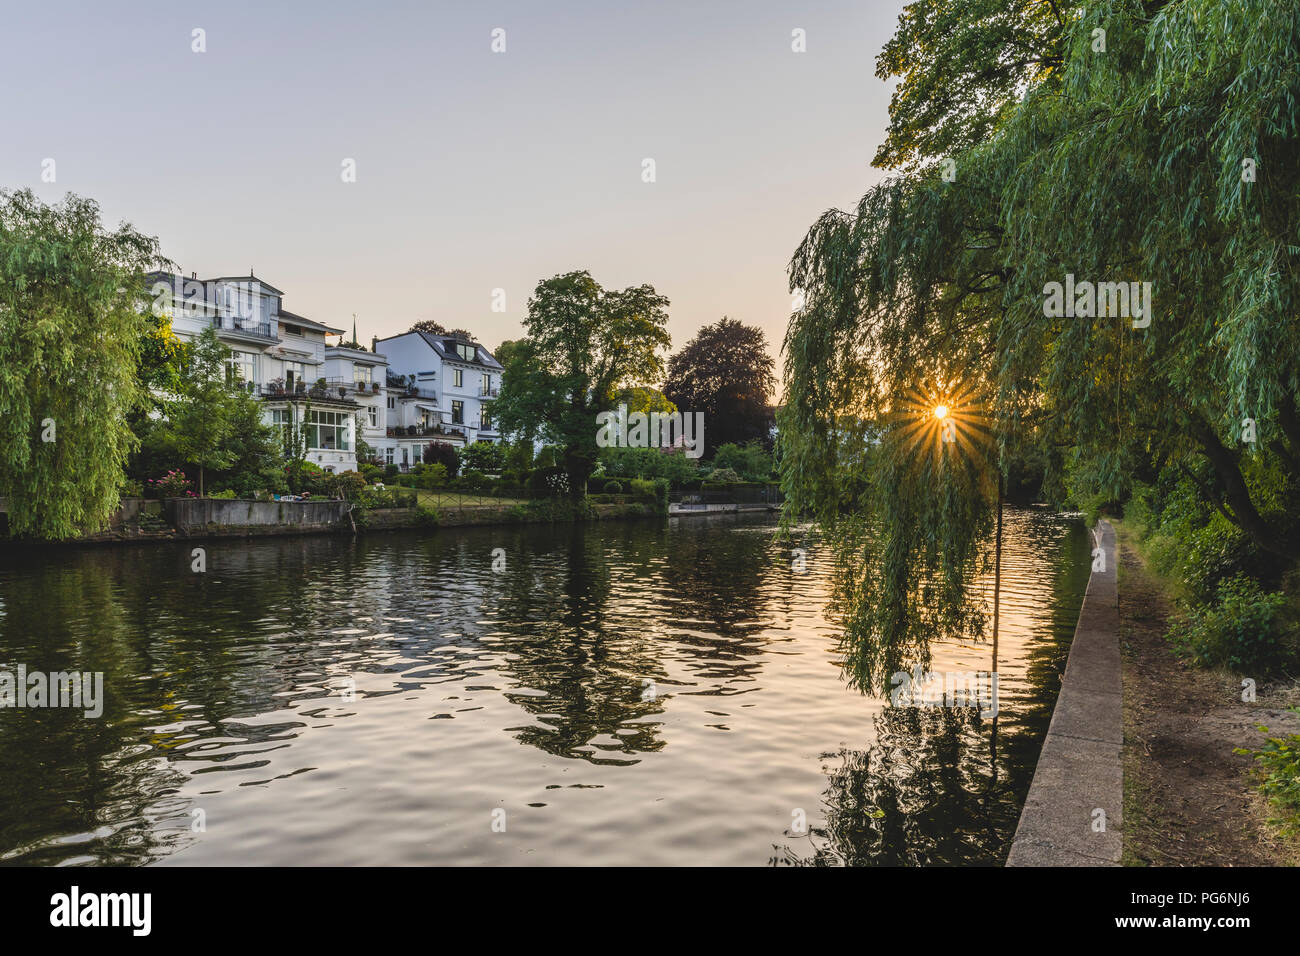 Alemania, Hamburgo, edificios residenciales en el Alster Foto de stock